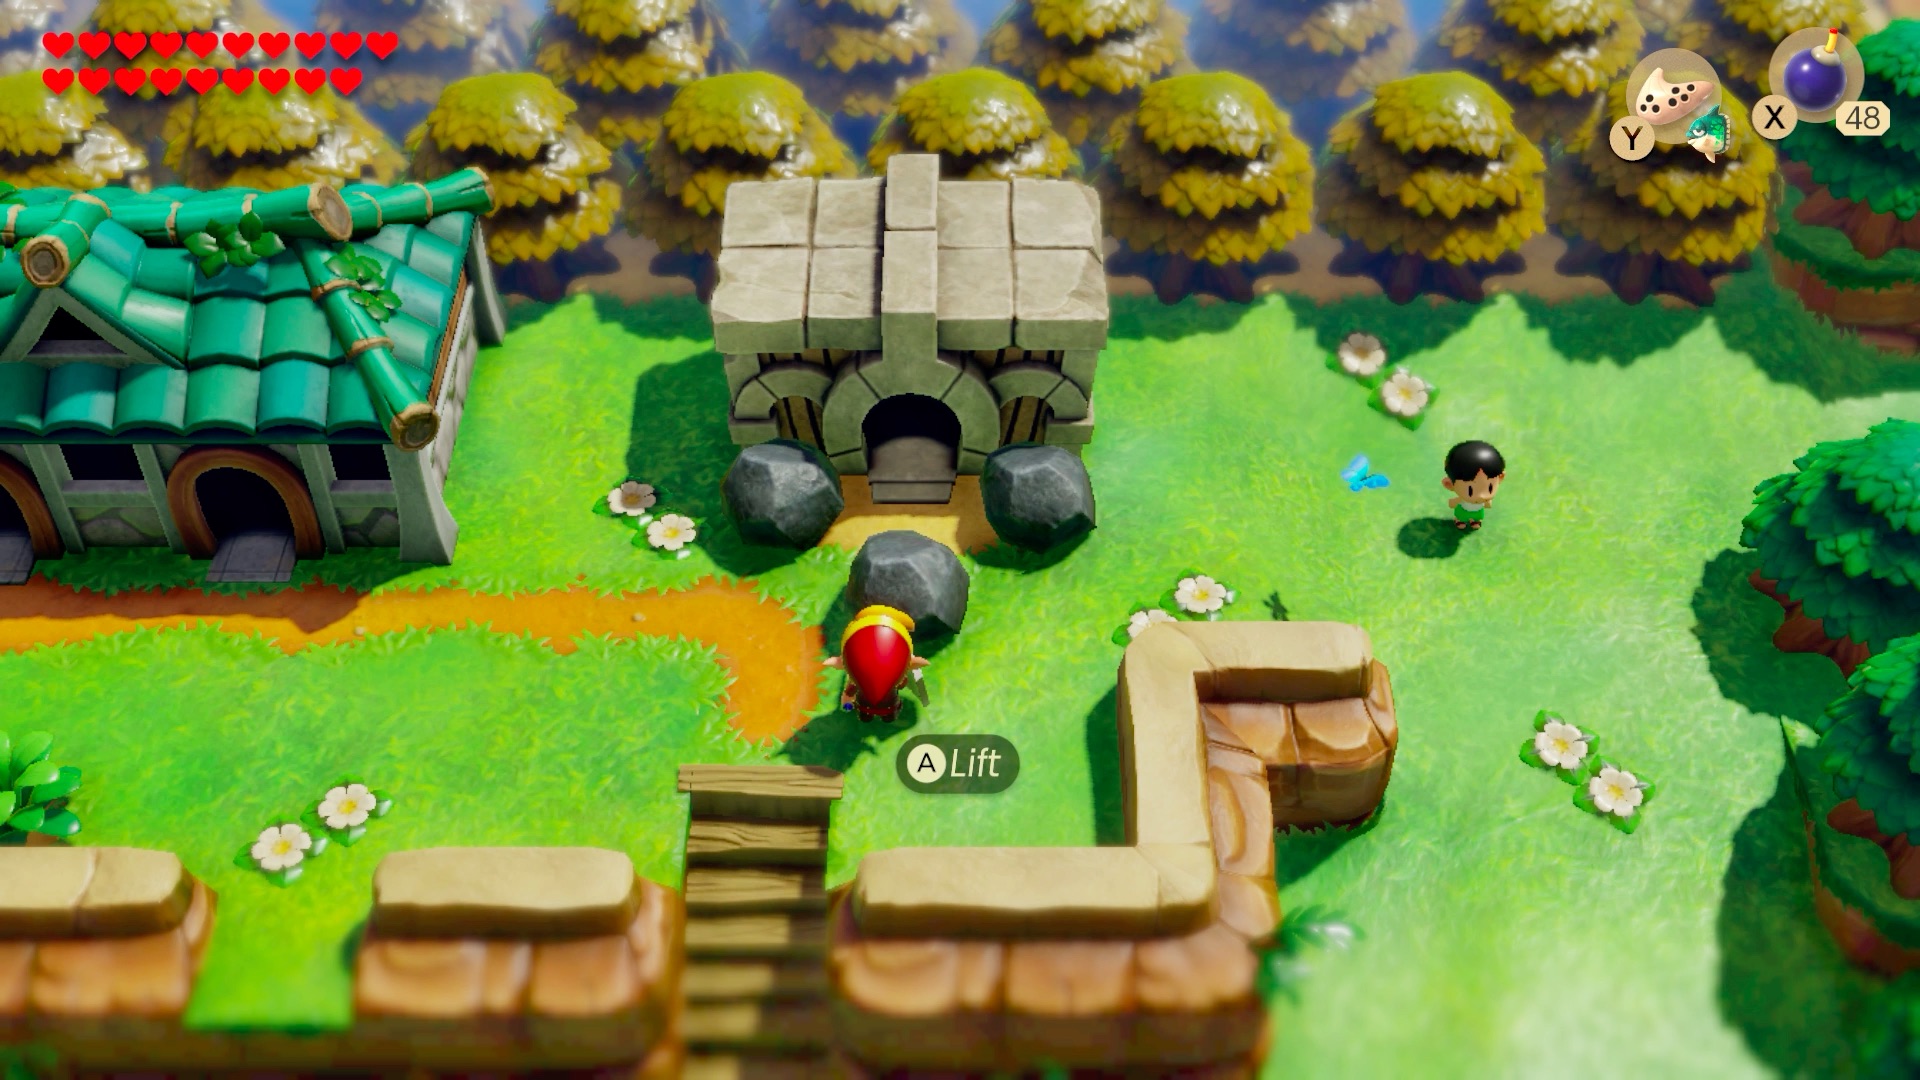 The Legend of Zelda Link's Awakening Walkthrough Gameplay Part 2